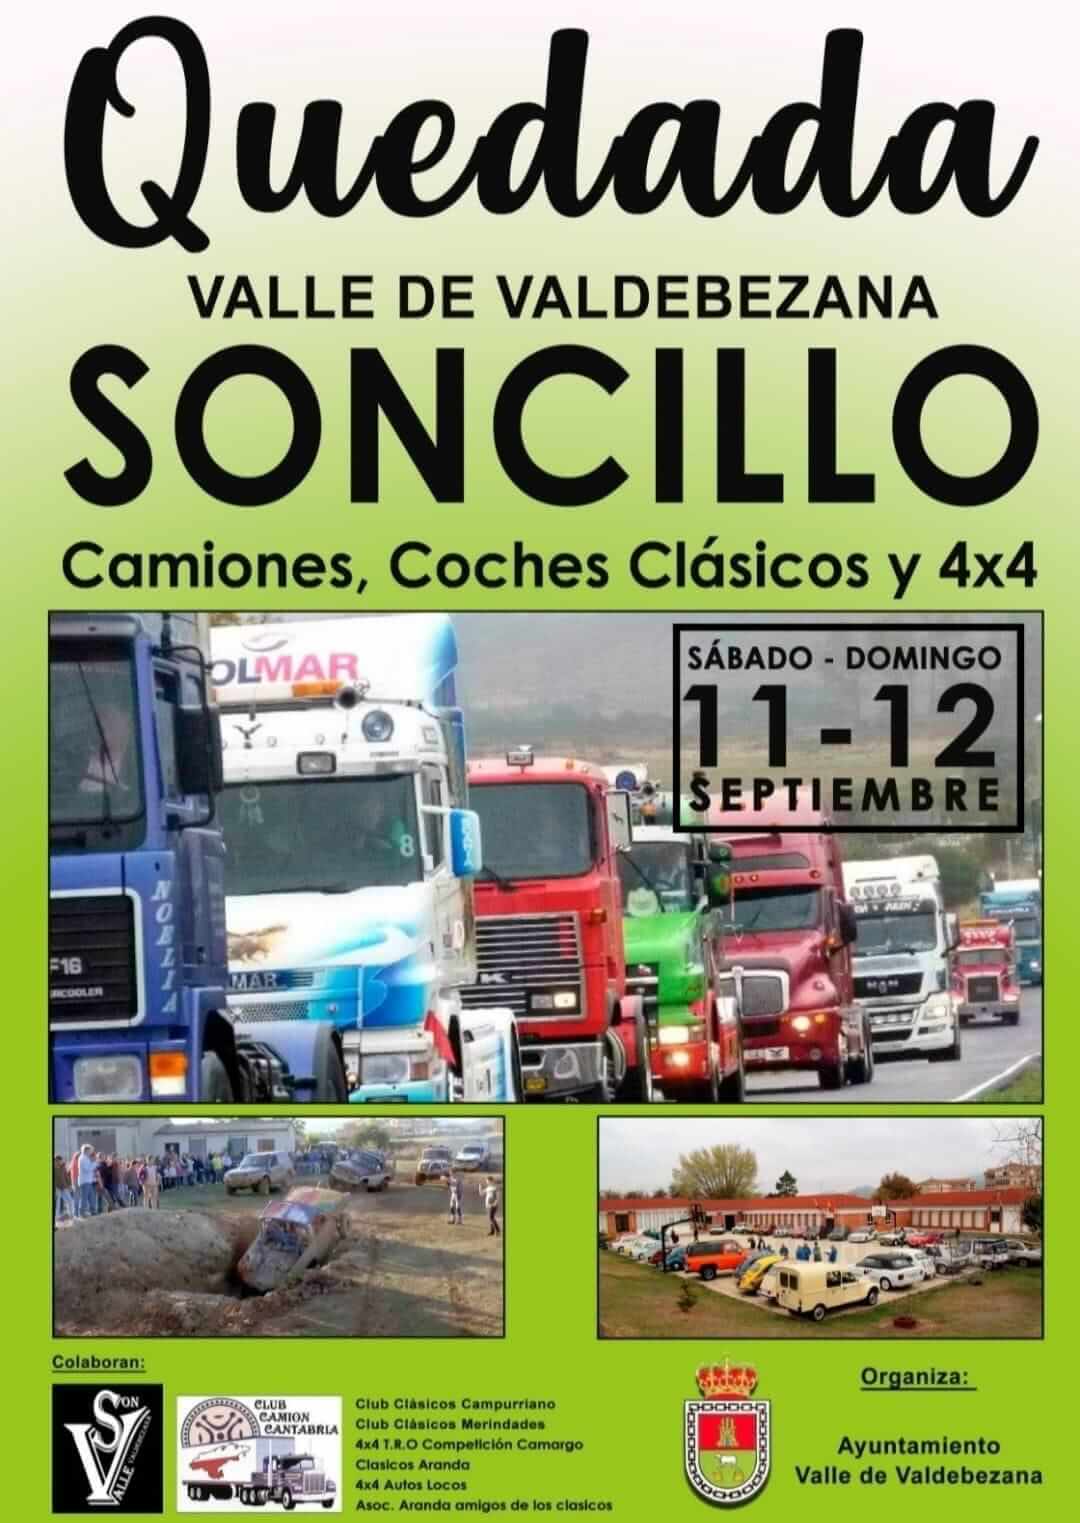 kdd Soncillo Valle de VAldebezana